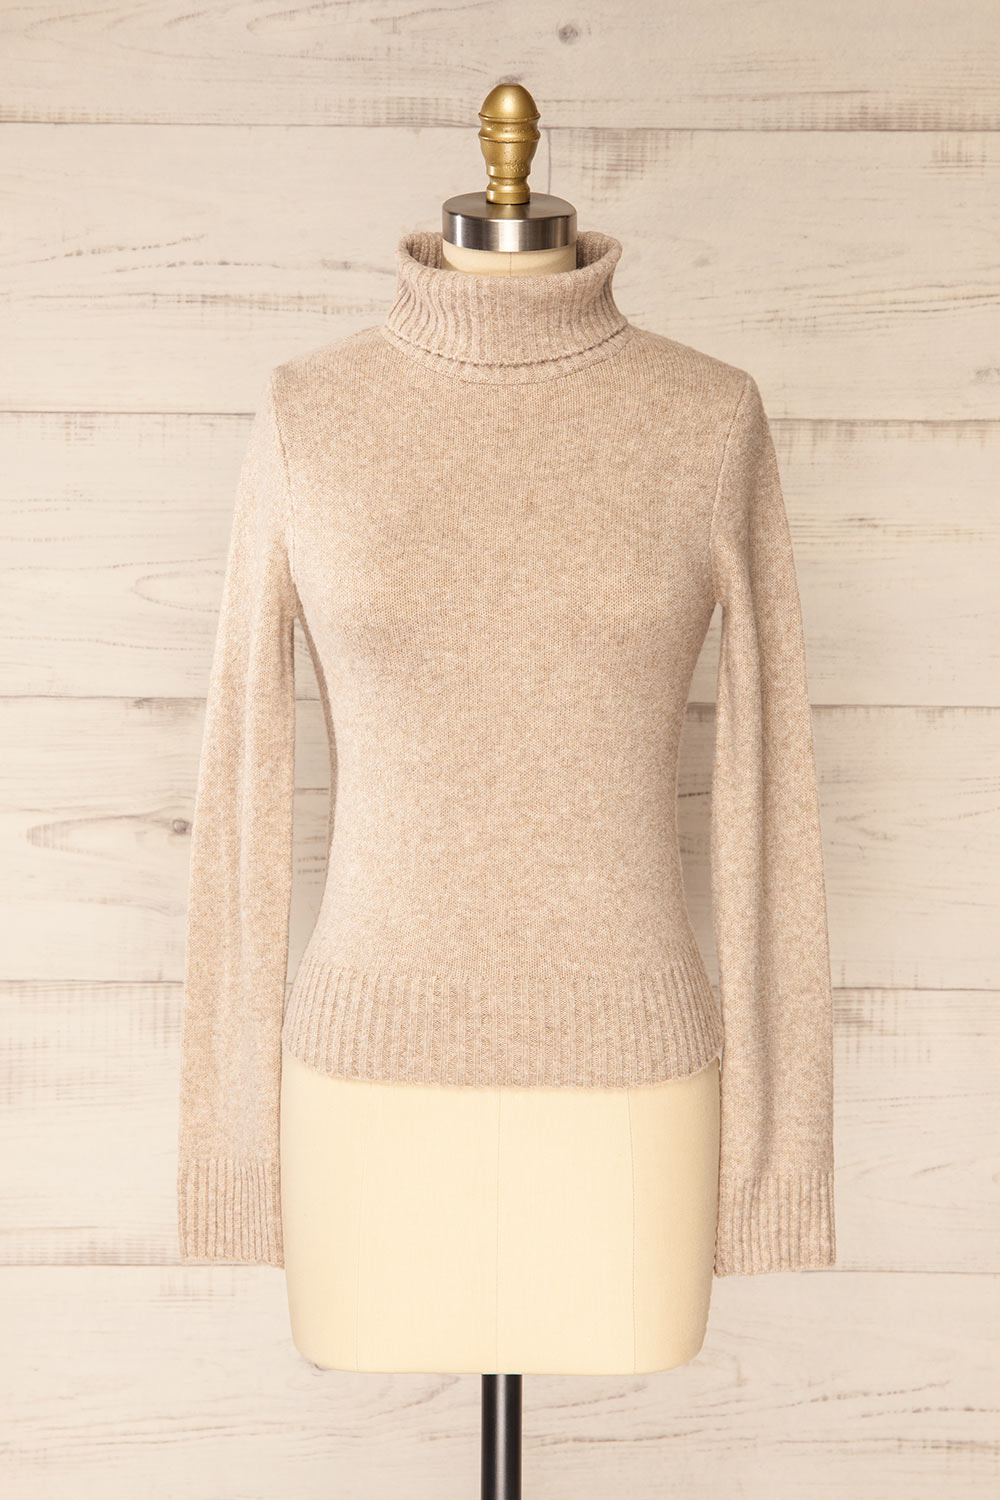 Tumut Taupe Short Turtleneck Sweater | La petite garçonne front view